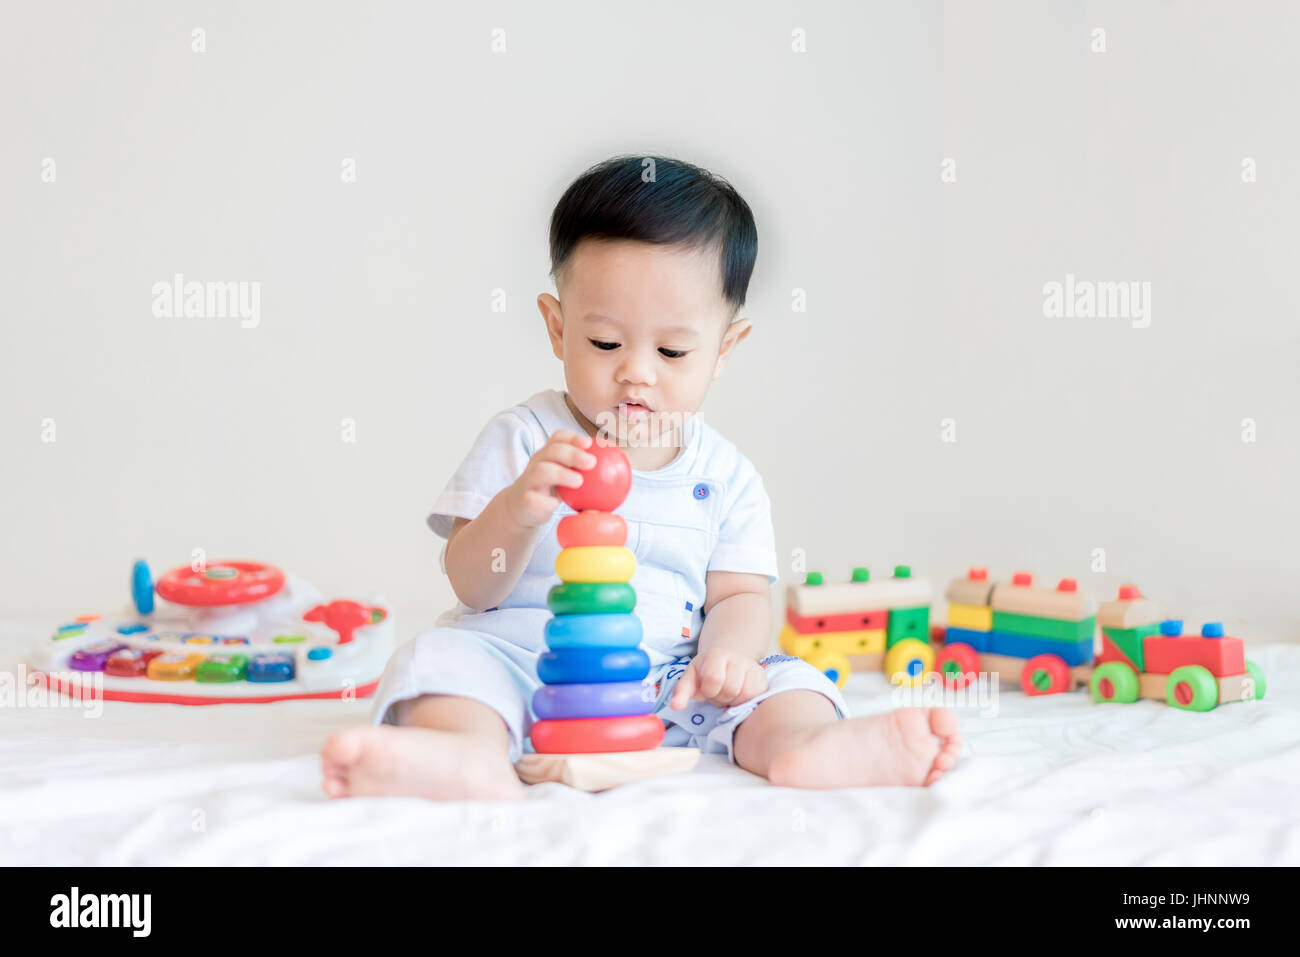 Entzückende asiatische Baby junge 9 Monate am Bett sitzen und spielen mit Farbe Entwicklungsstörungen Spielzeug zu Hause. Stockfoto